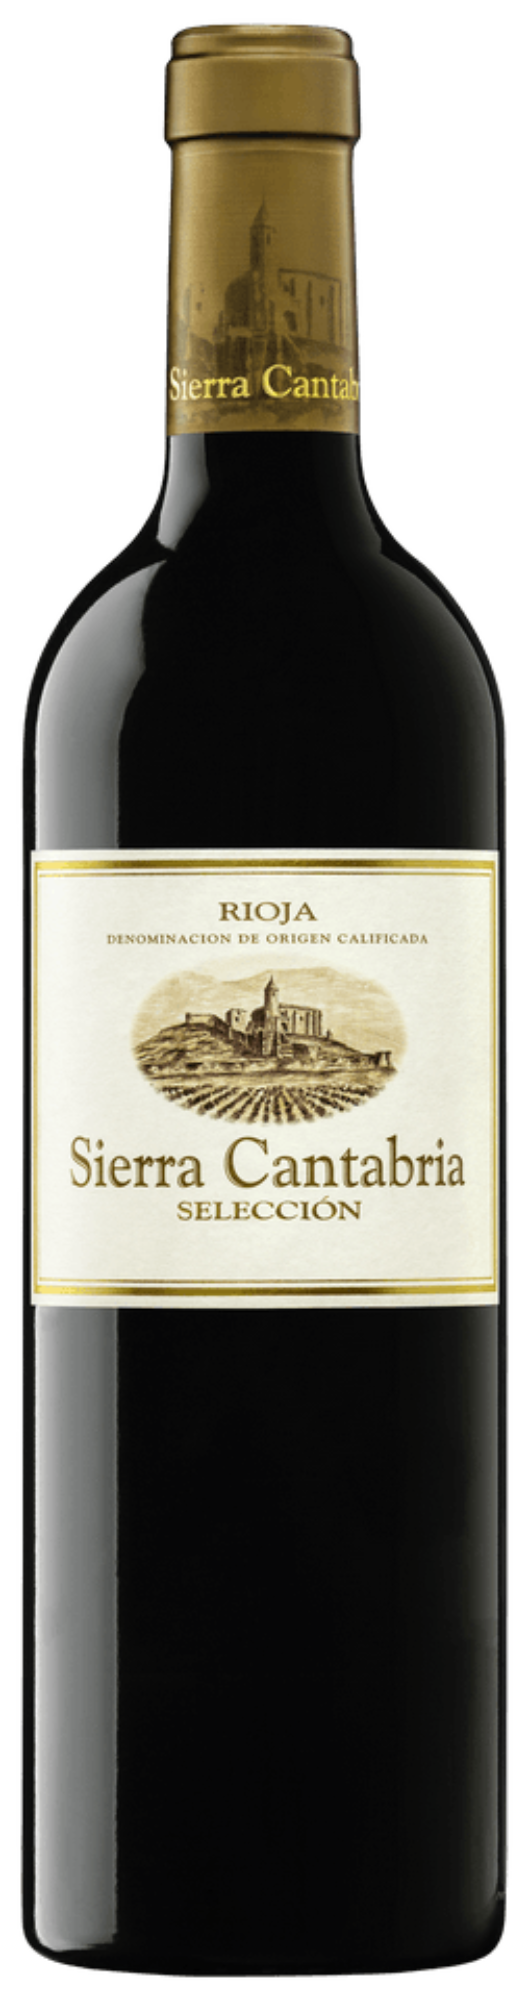 Sierra Cantabria “Selección” Rioja 2020 (Email Sale, Arrives 5/10)